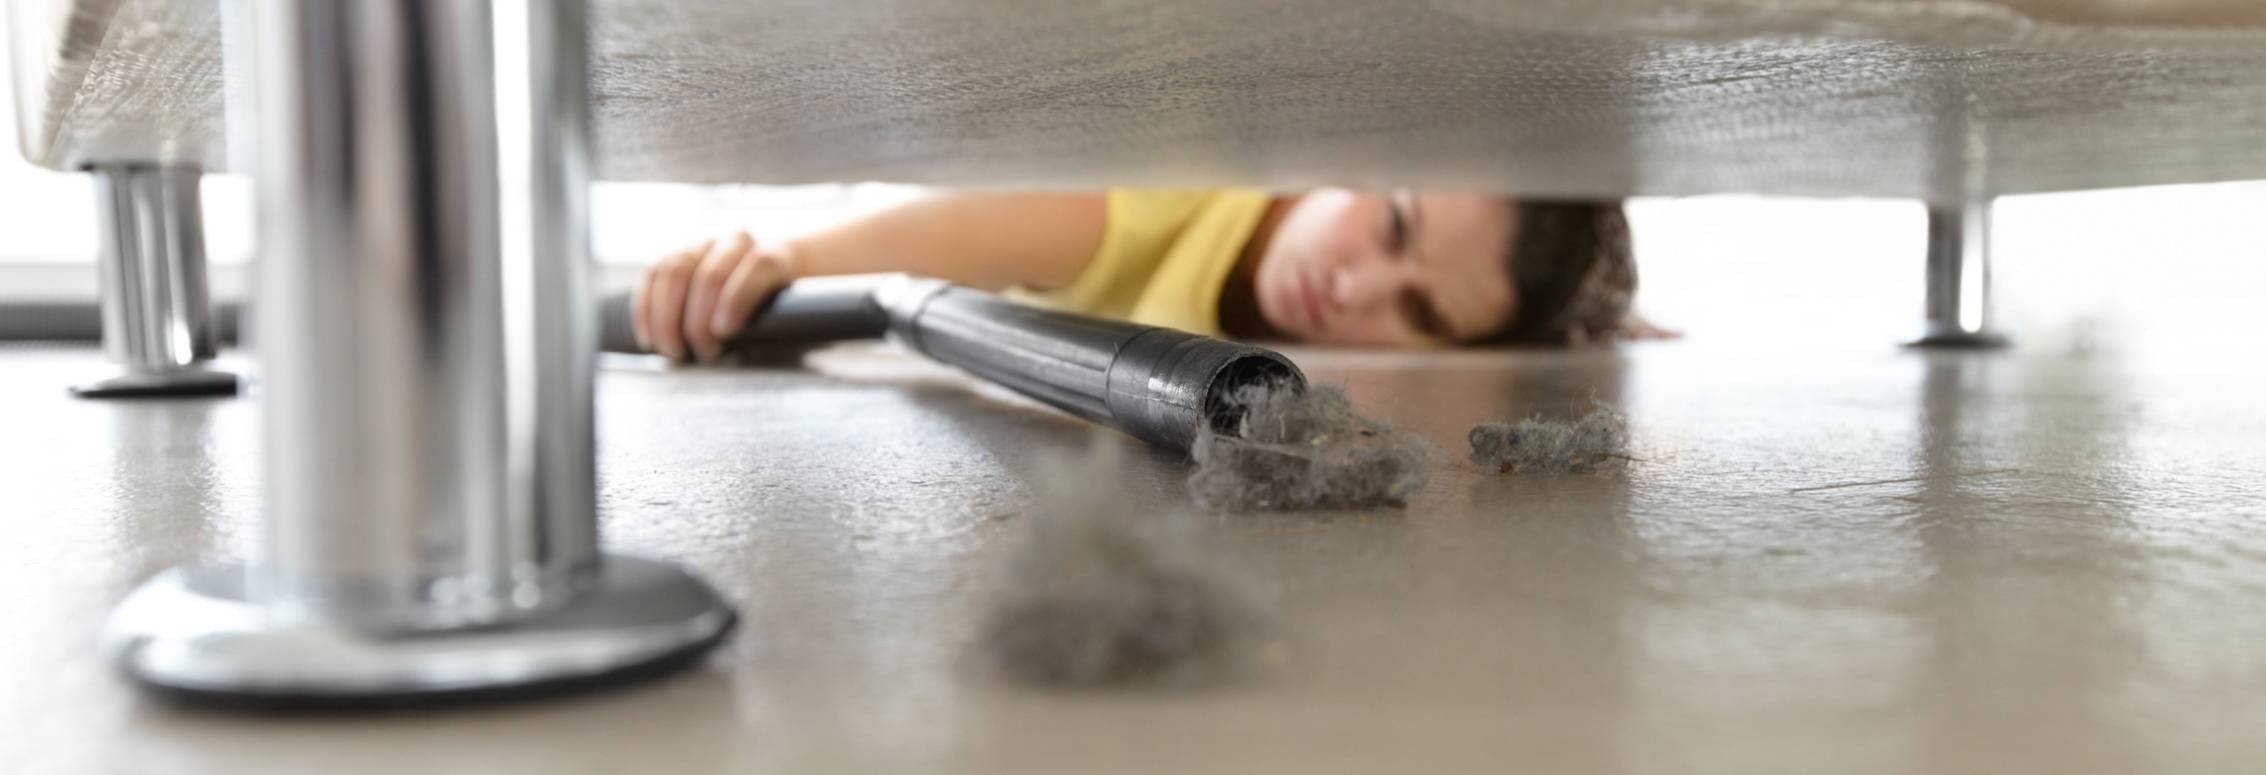 Как убрать пыль в квартире хотя бы ненадолго? есть много эффективных способов способов